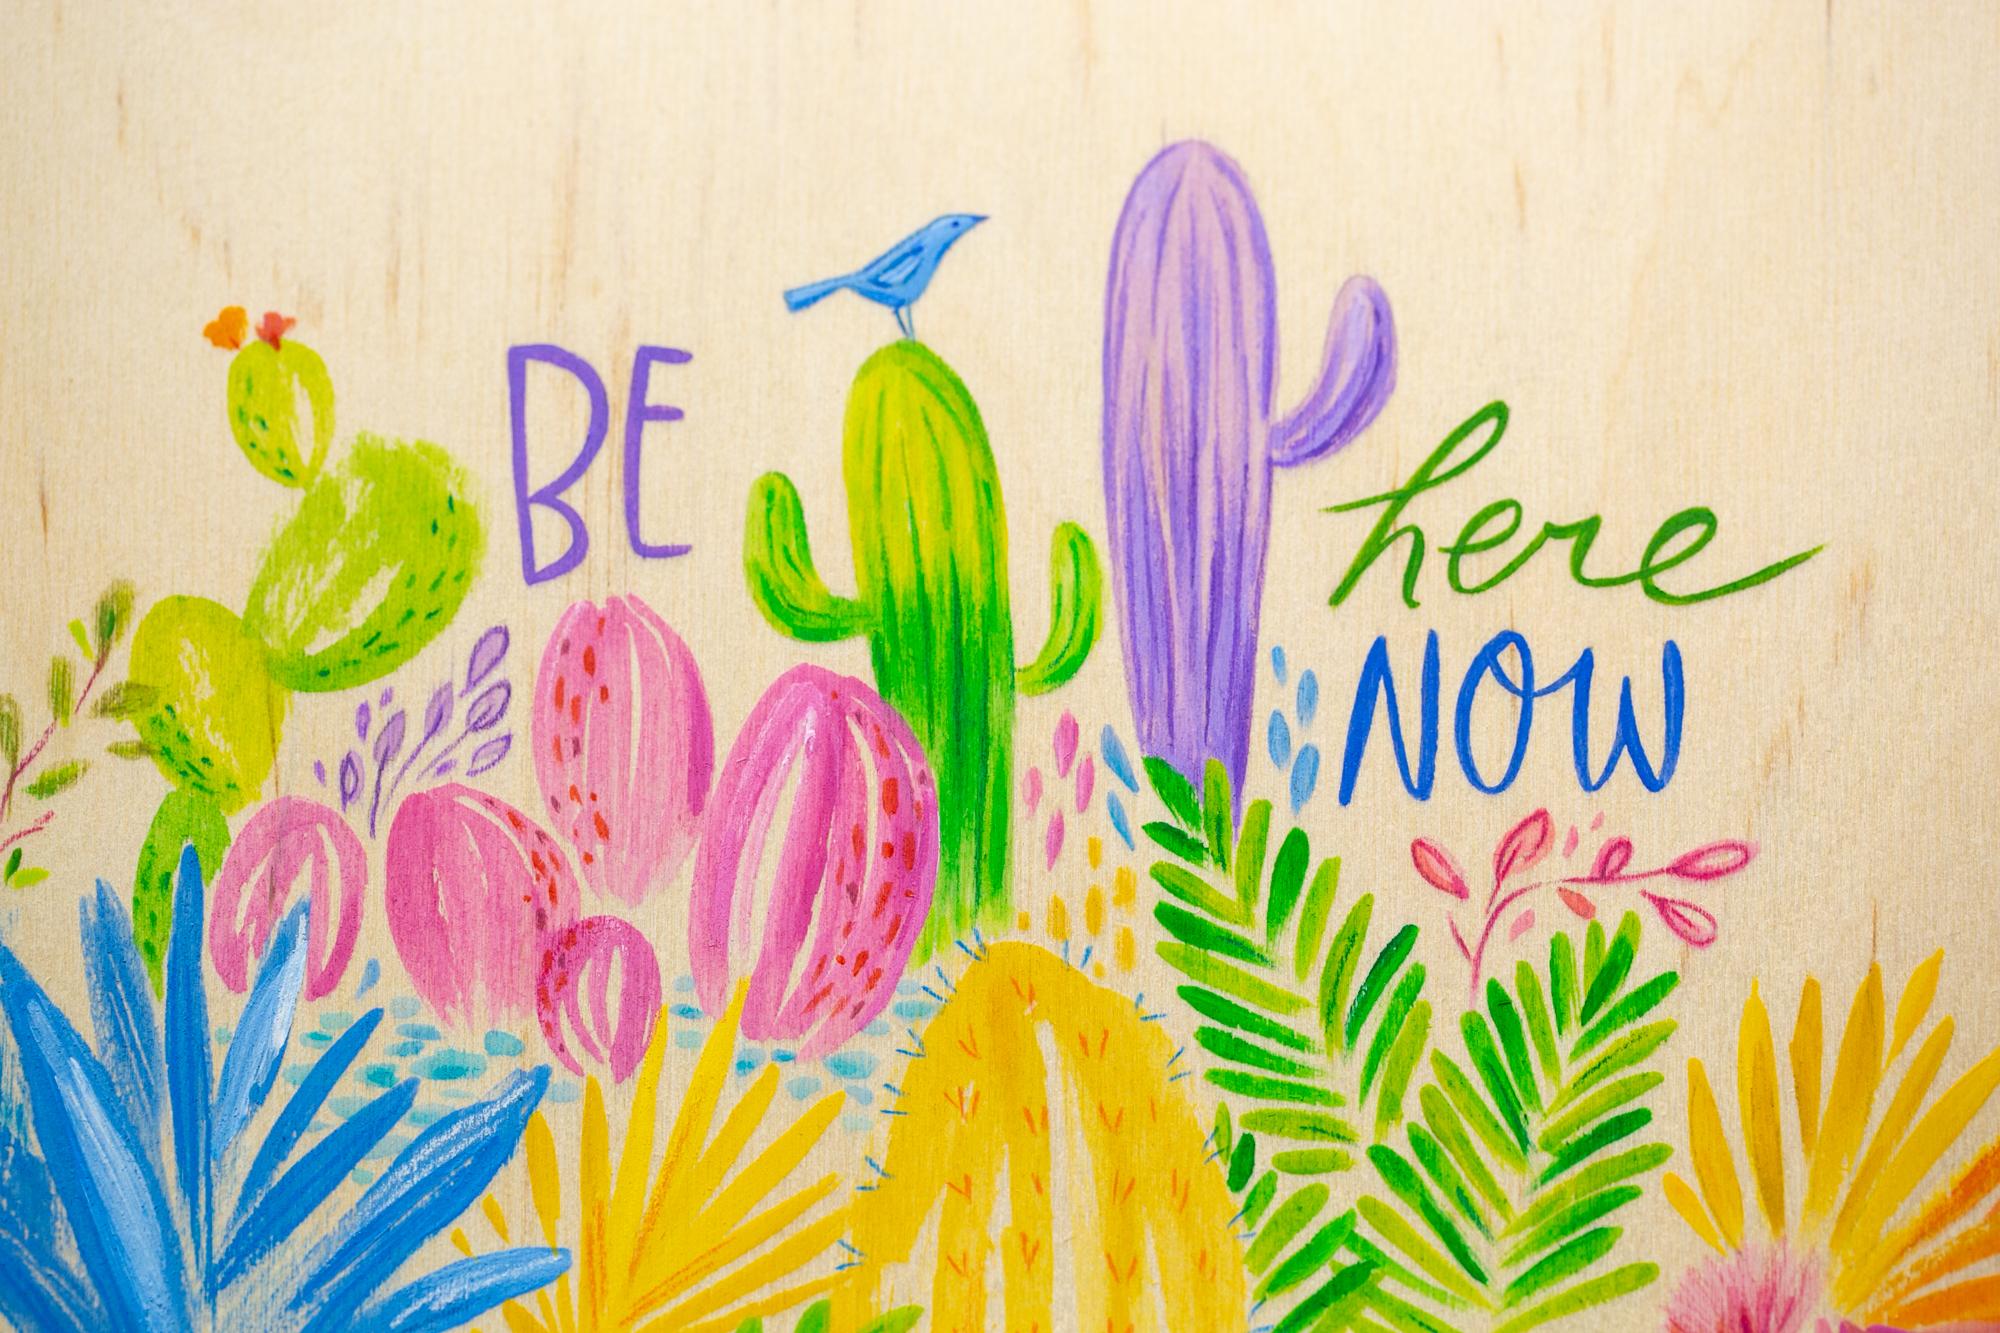 « Be Here Now », peinture florale, texte, bois exposé, couleurs vives et vives - Art de Melissa Lomax